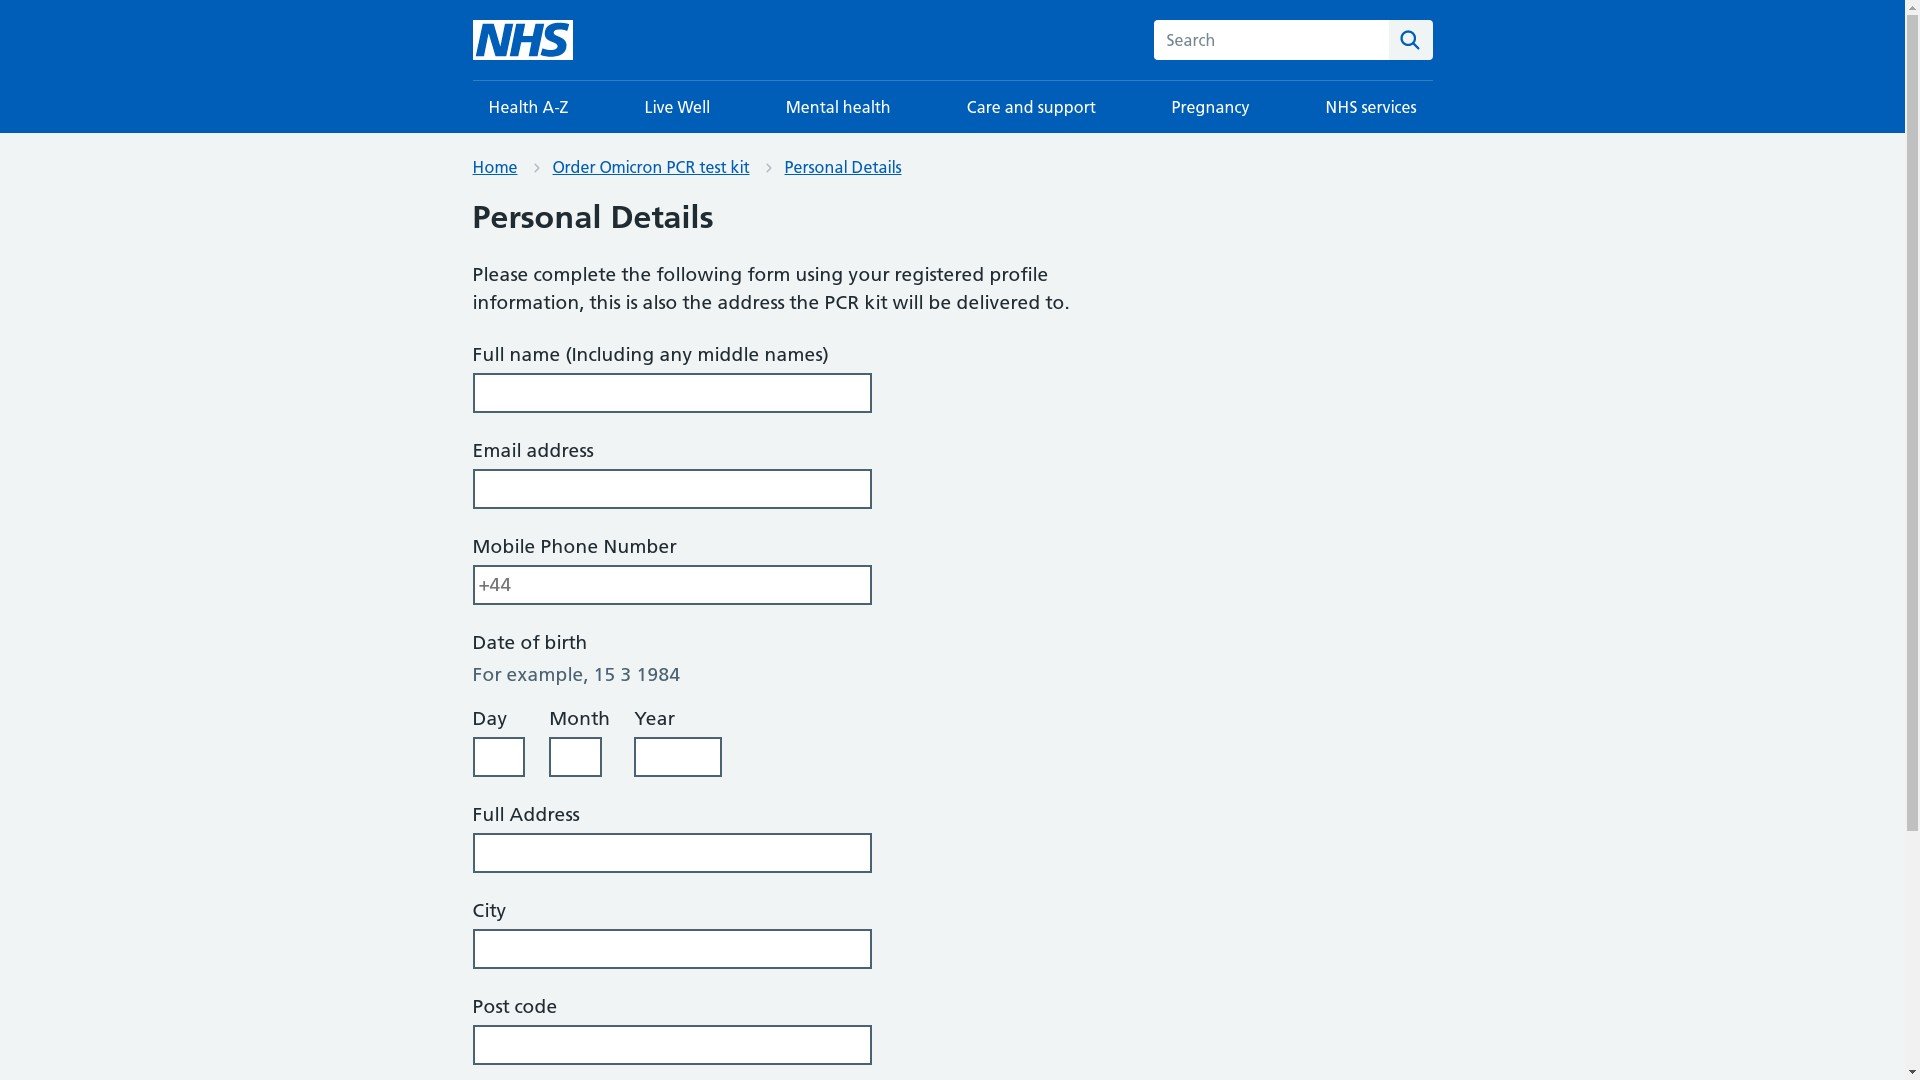 health-care.uk.com scam website